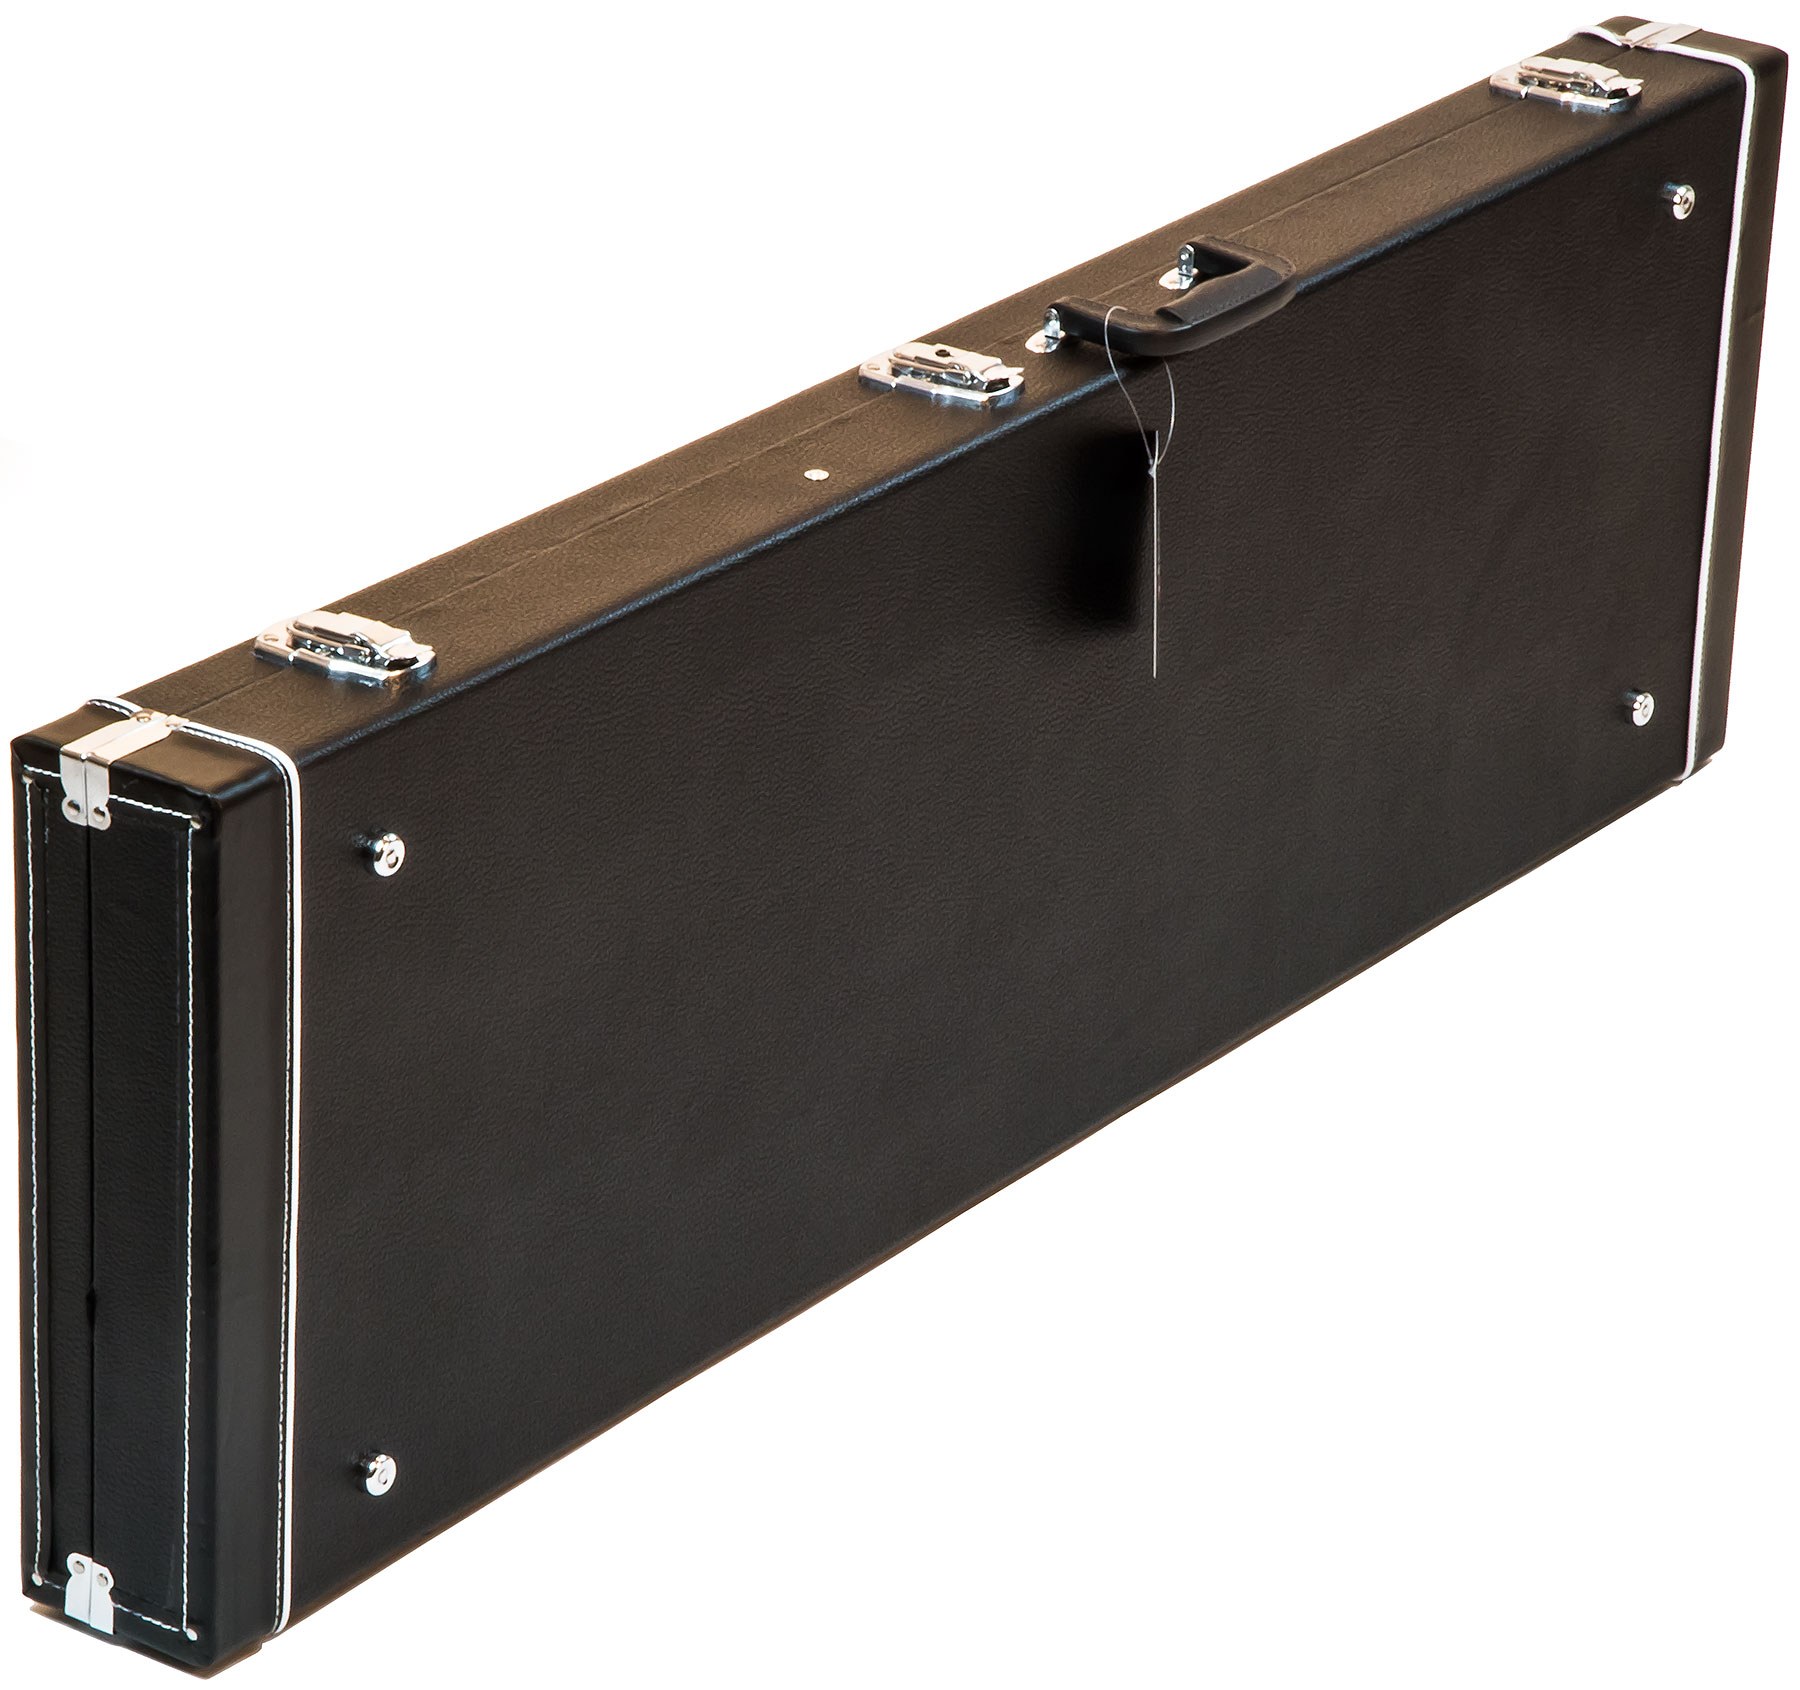 X-tone 1504 Standard Electrique Jazz/precision Bass Rectangulaire Black - Elektrische baskoffer - Variation 1